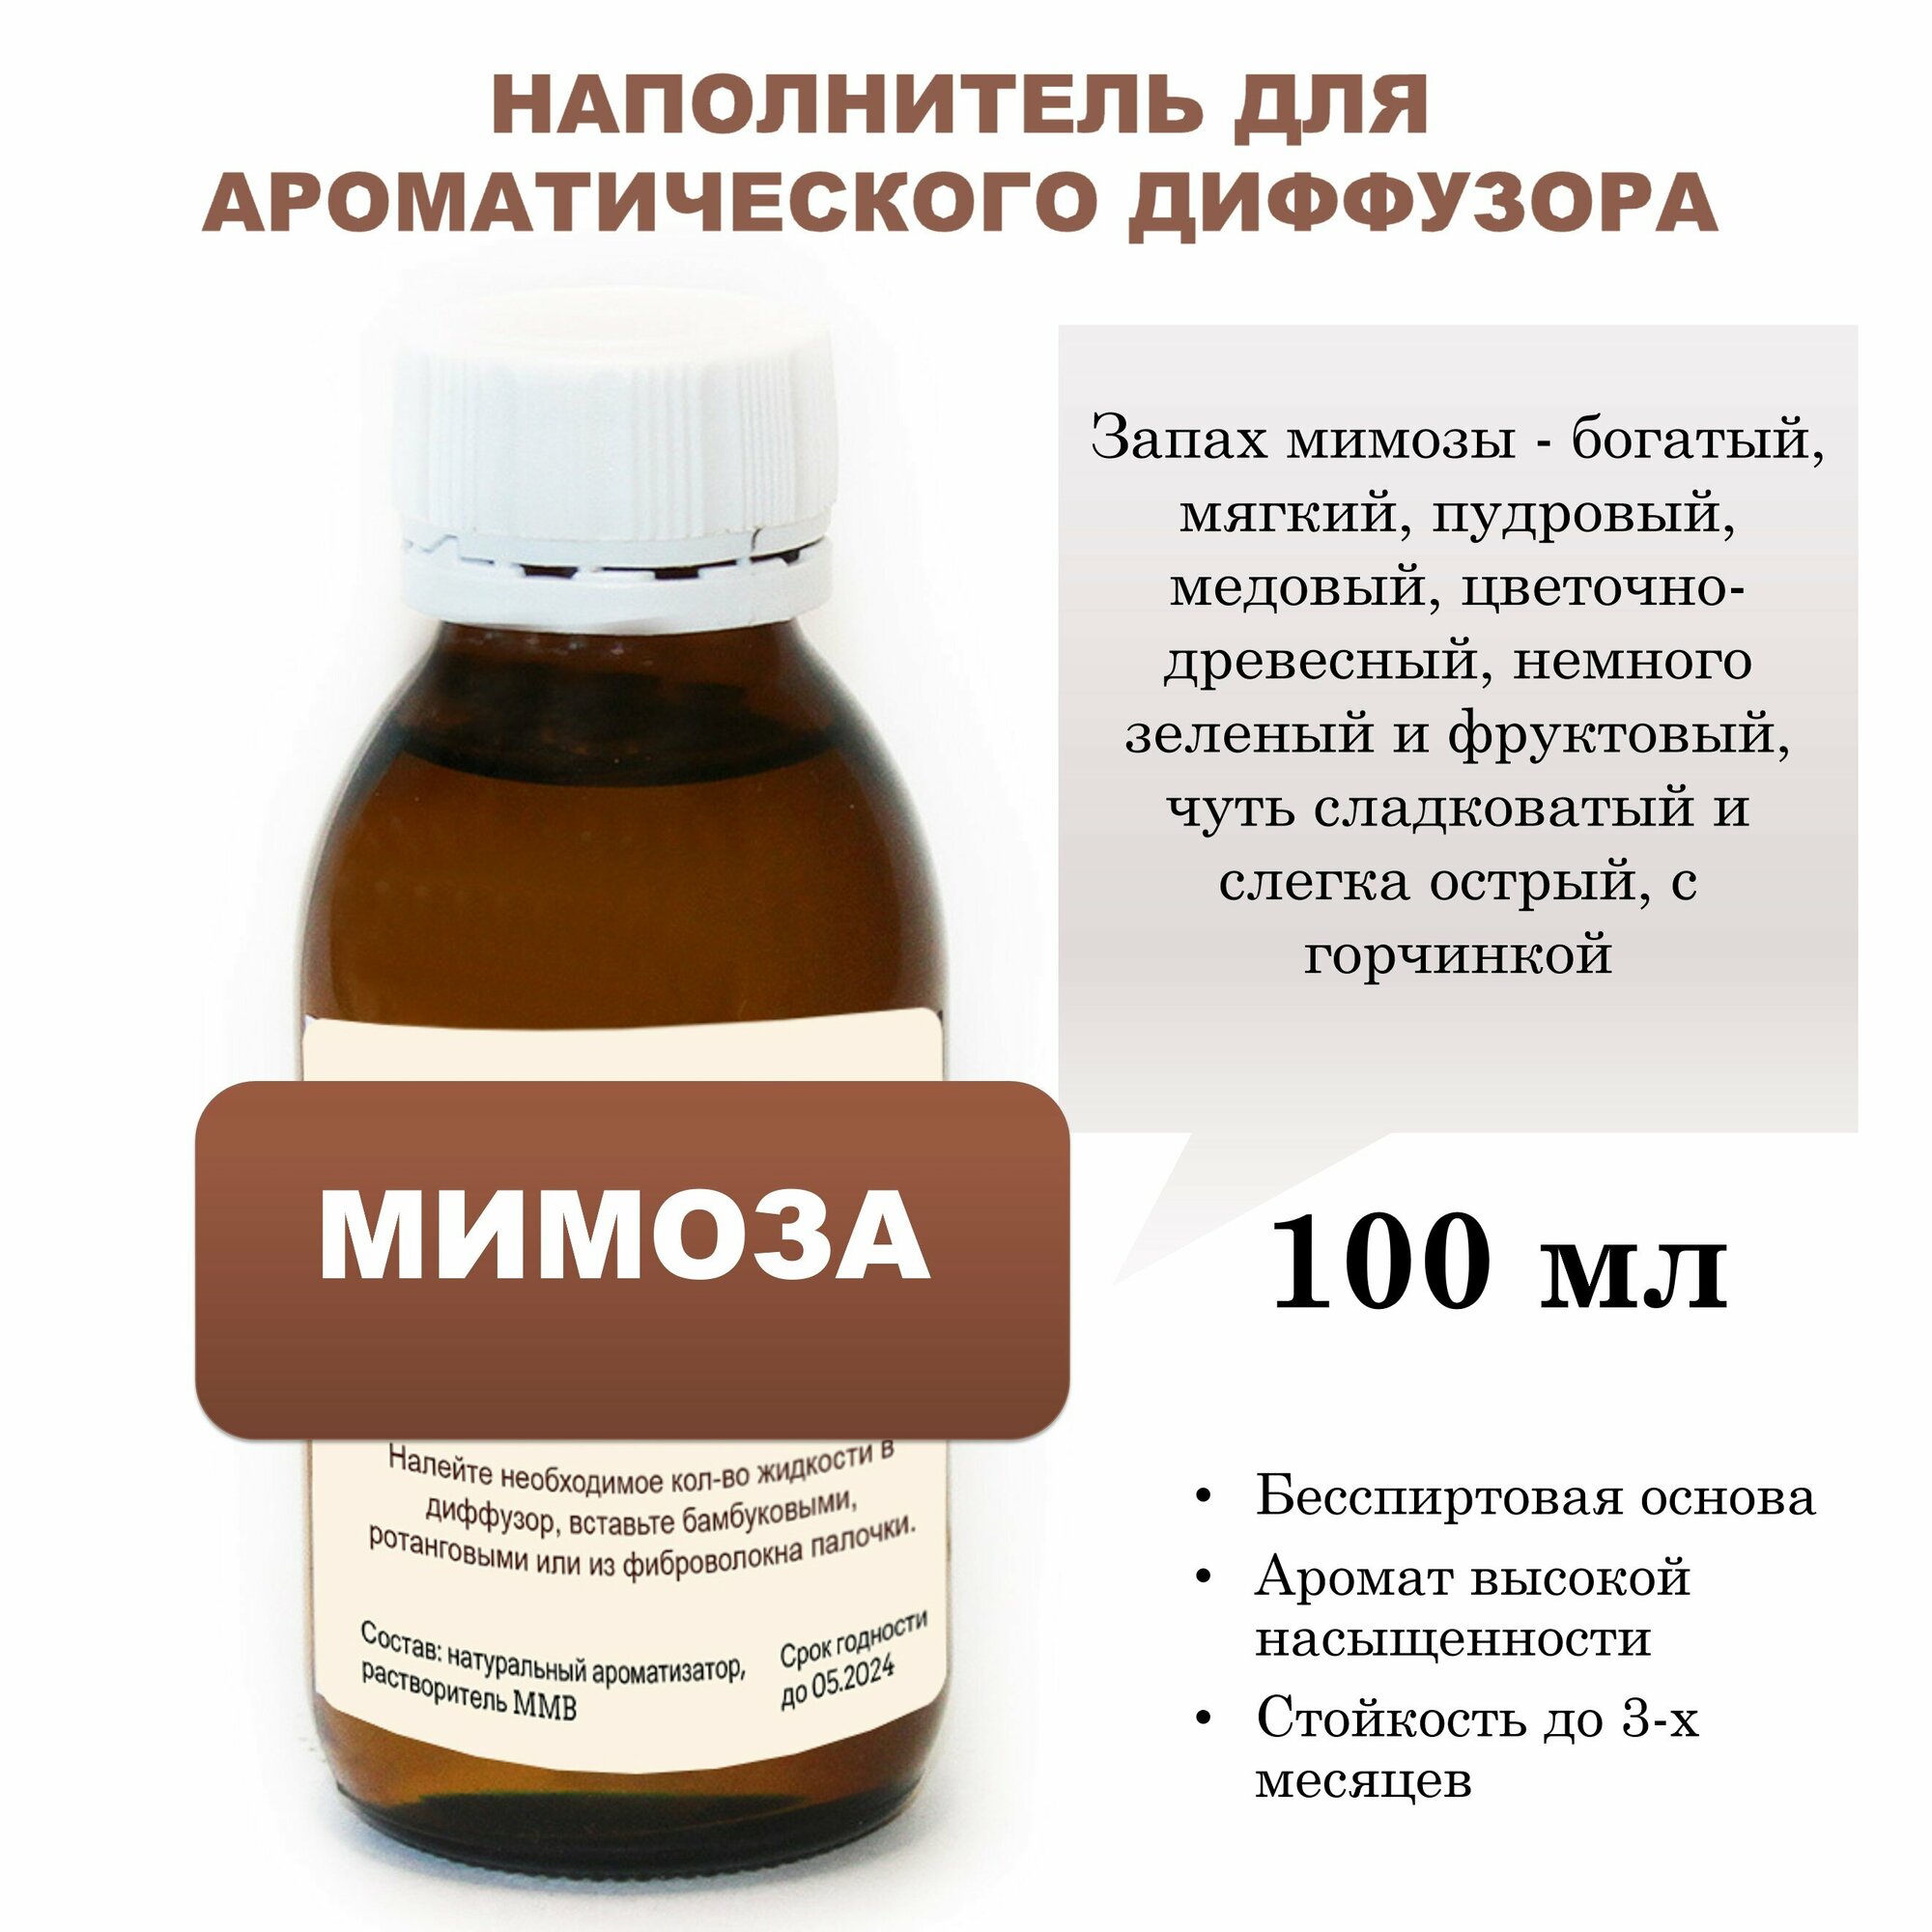 Мимоза - Наполнитель для ароматического диффузора (100 мл)